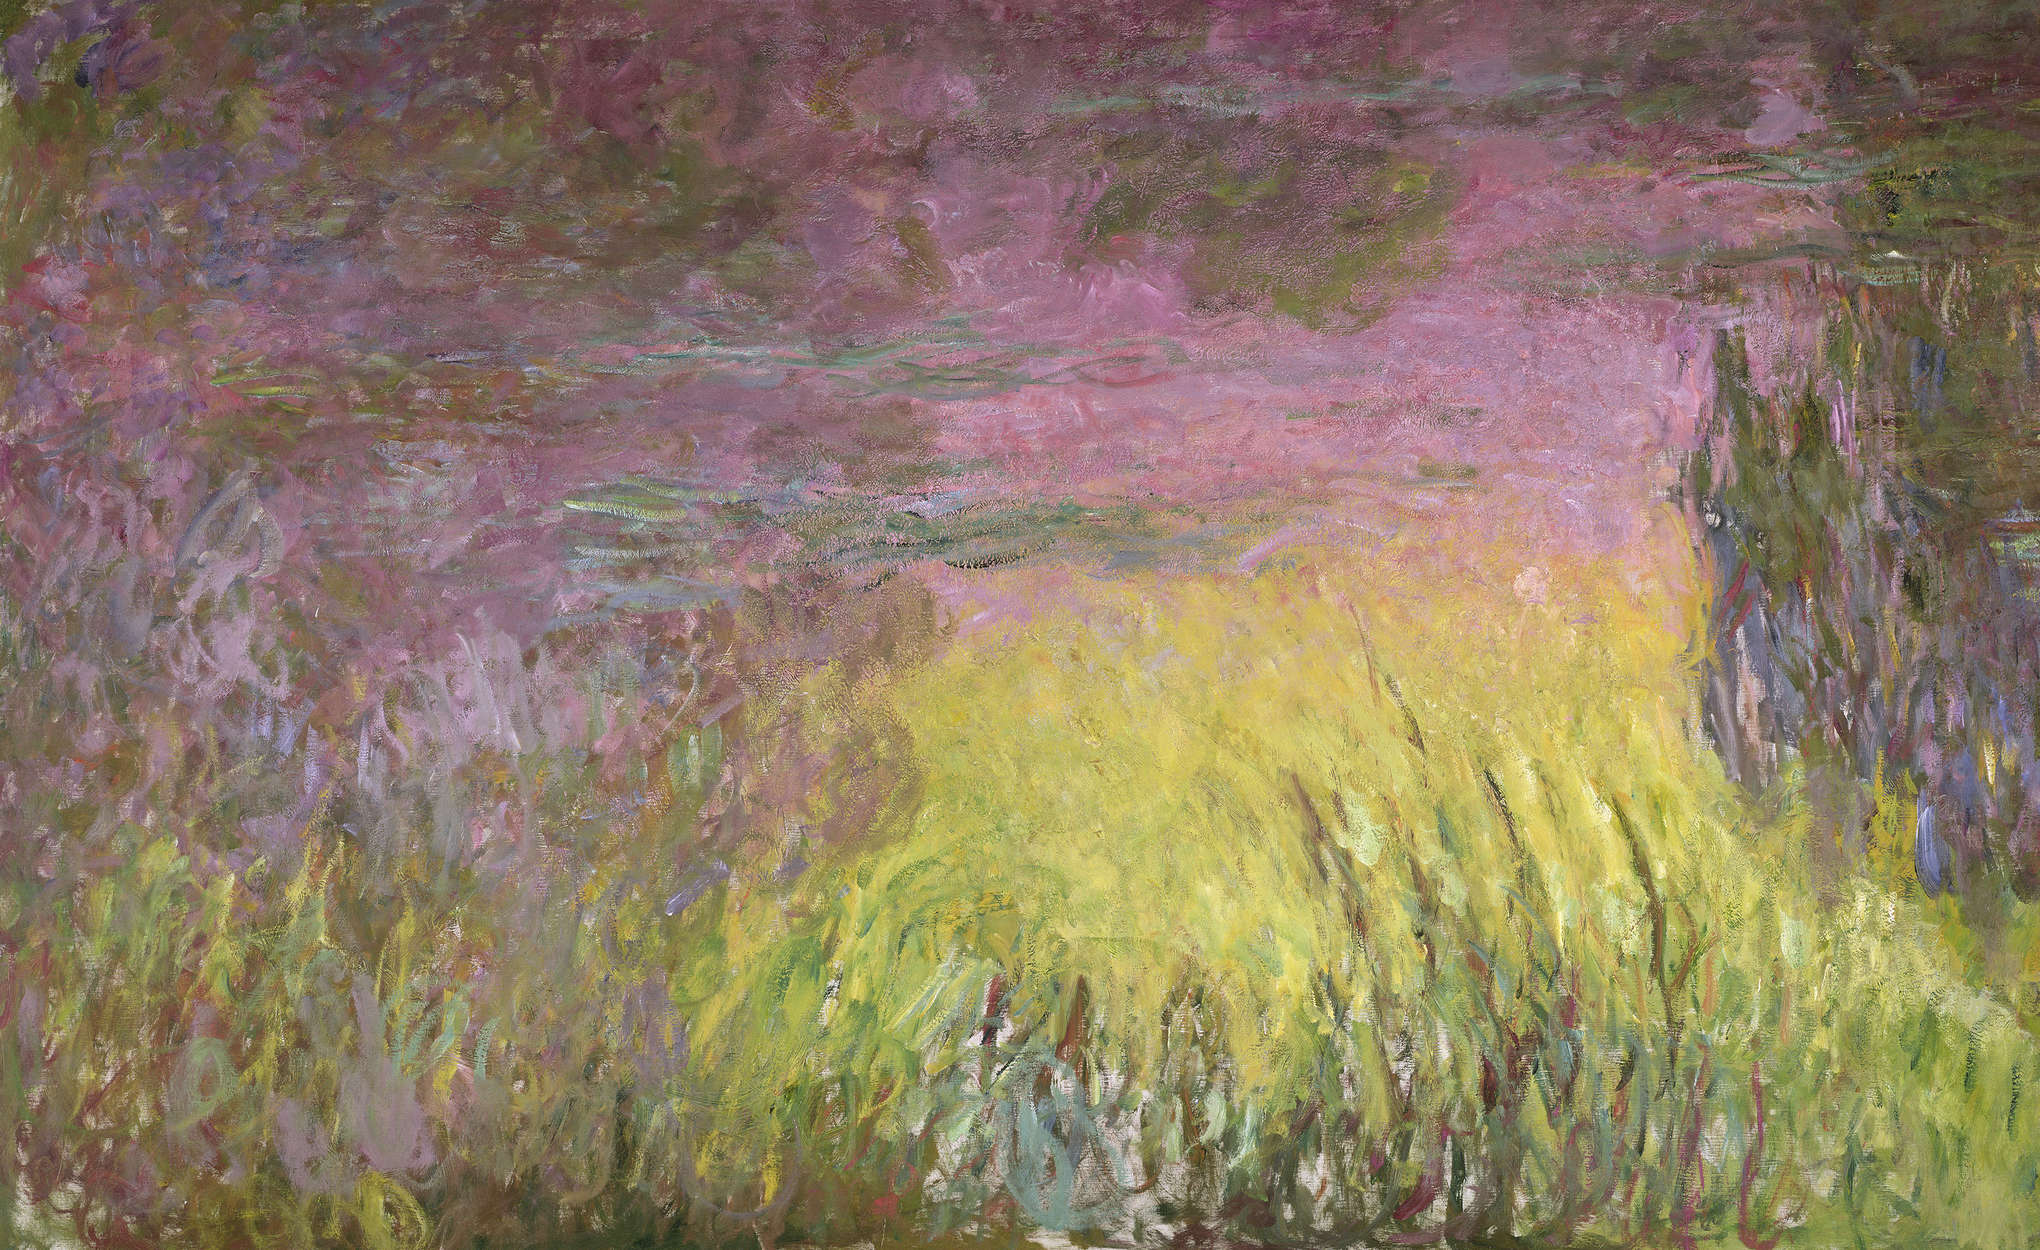             Fototapete "Seerosen bei Sonnenuntergang" von Claude Monet
        